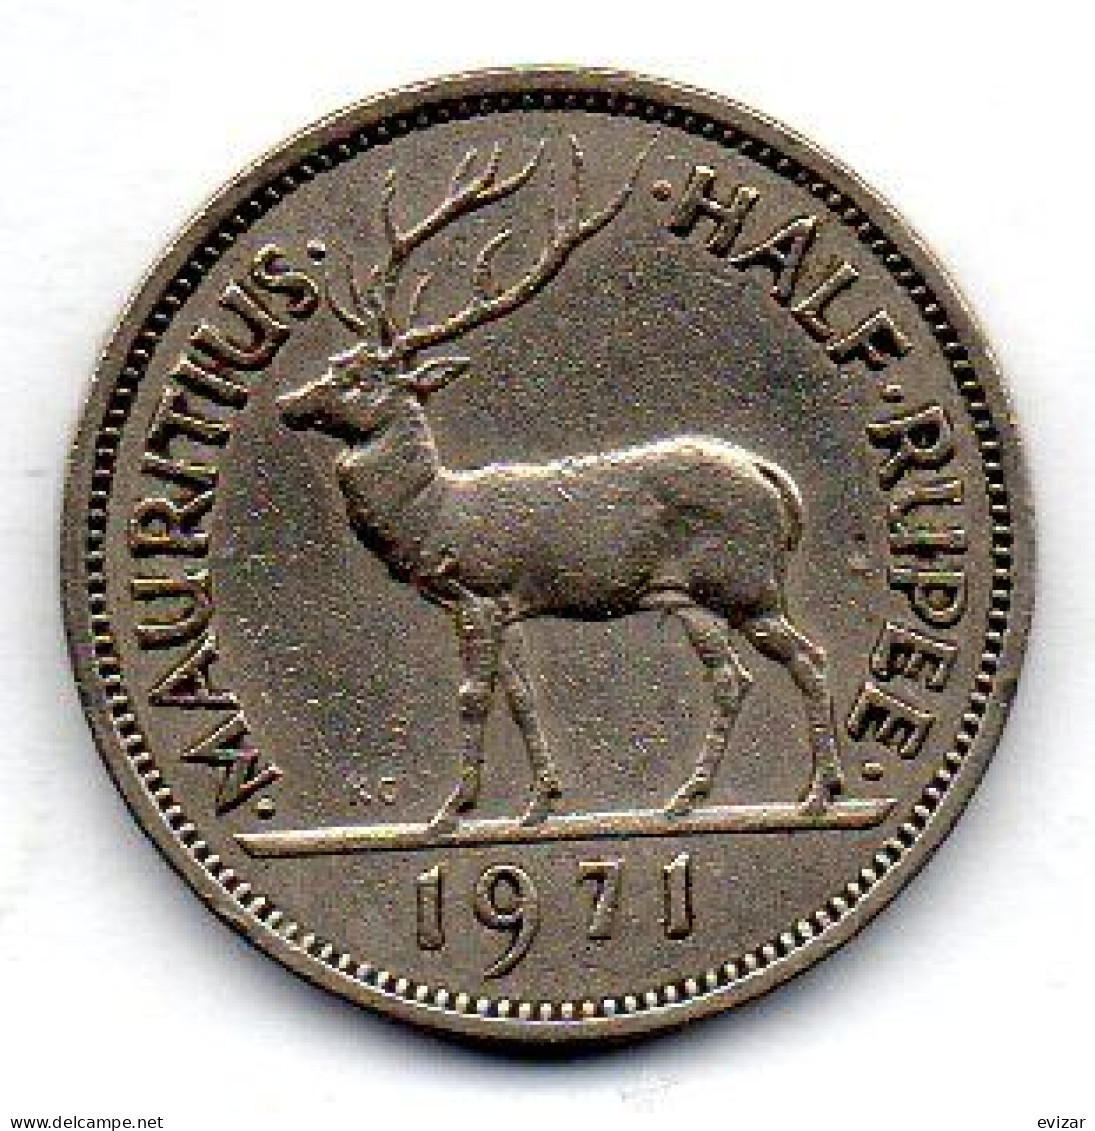 MAURITIUS, 1/2 Rupee, Copper-Nickel, Year 1971, KM # 37.1 - Mauritius